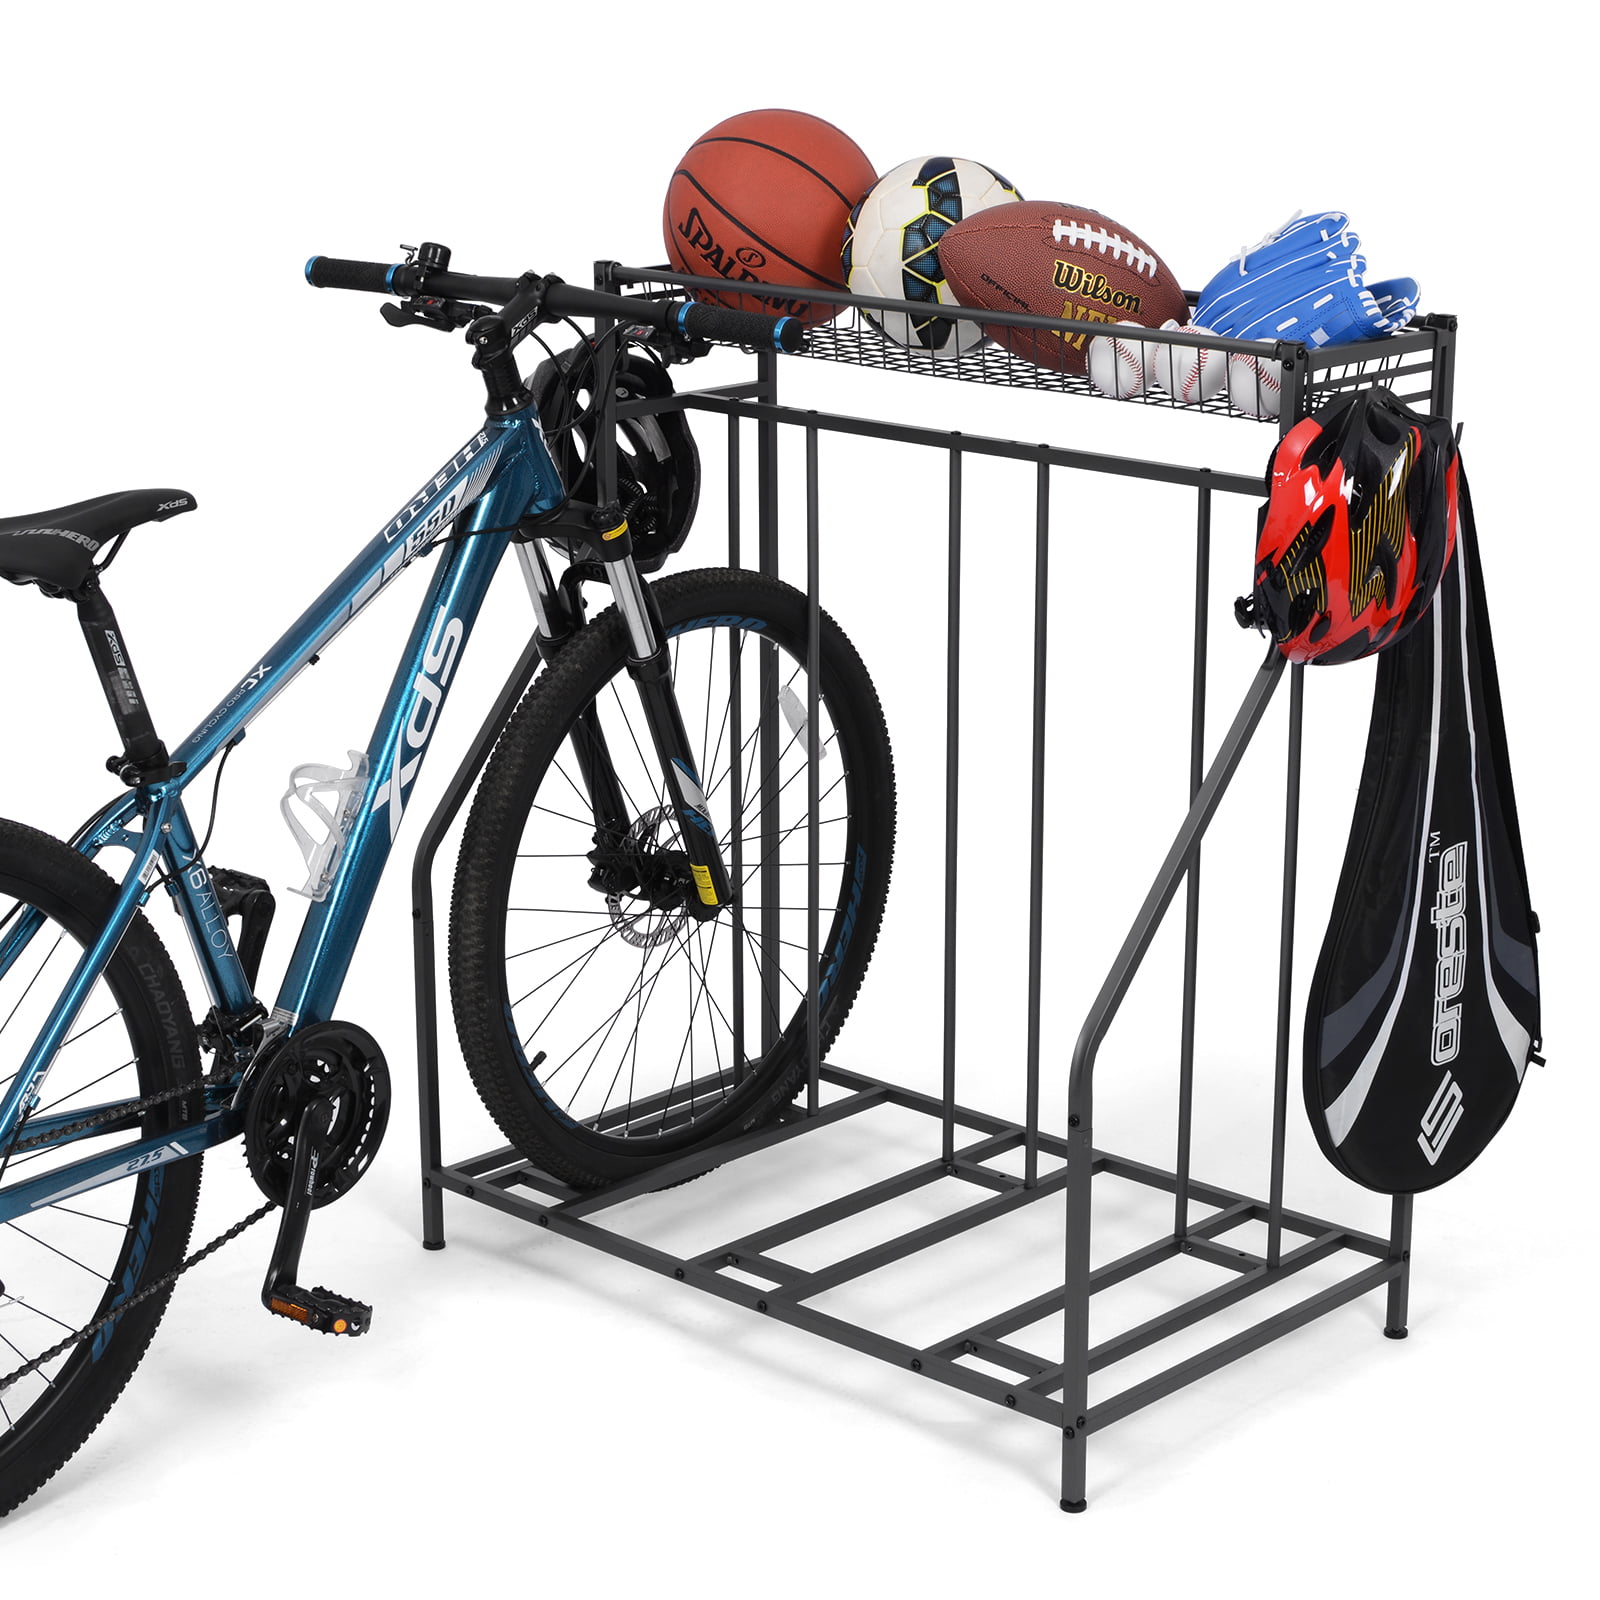 Details about   Bike Stands Indoor Bicycle Parking Portable Rack Bike Adjustable Stand Holder 